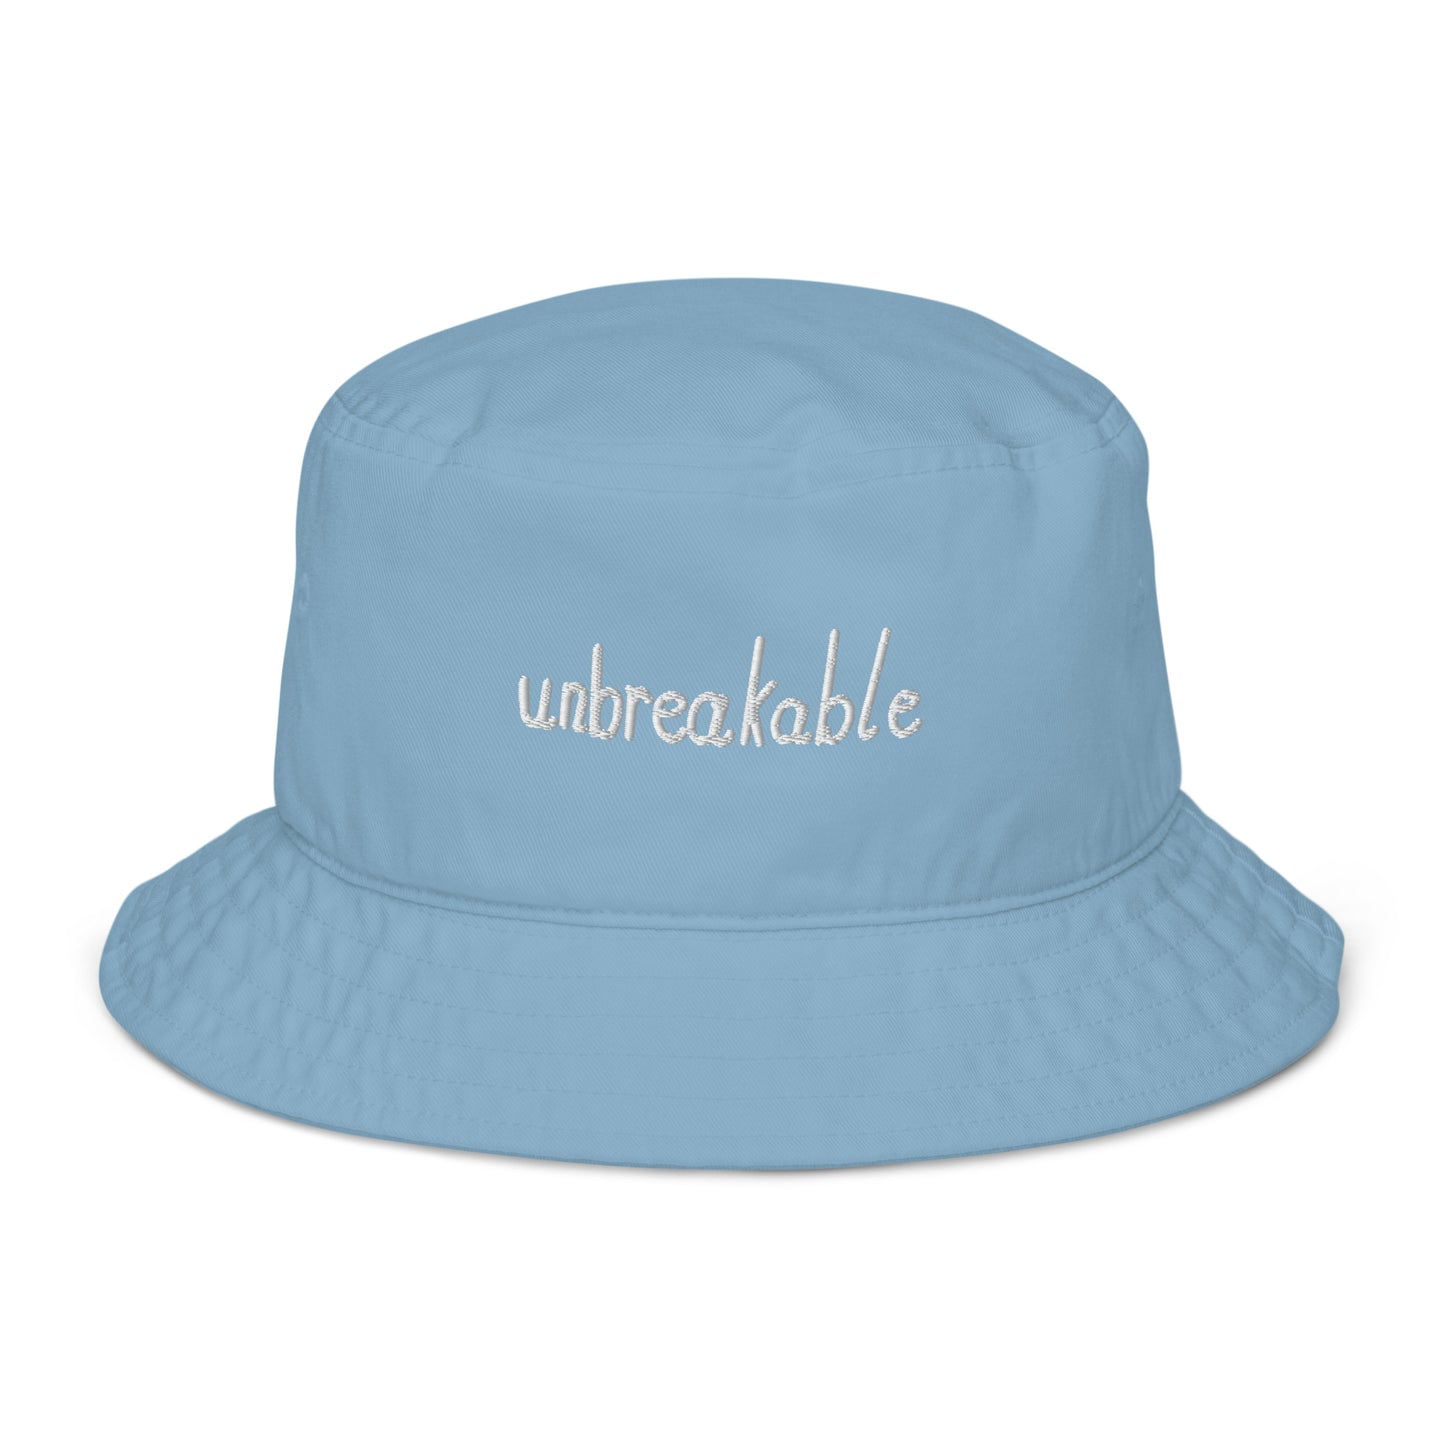 Unbreakable Bucket hat